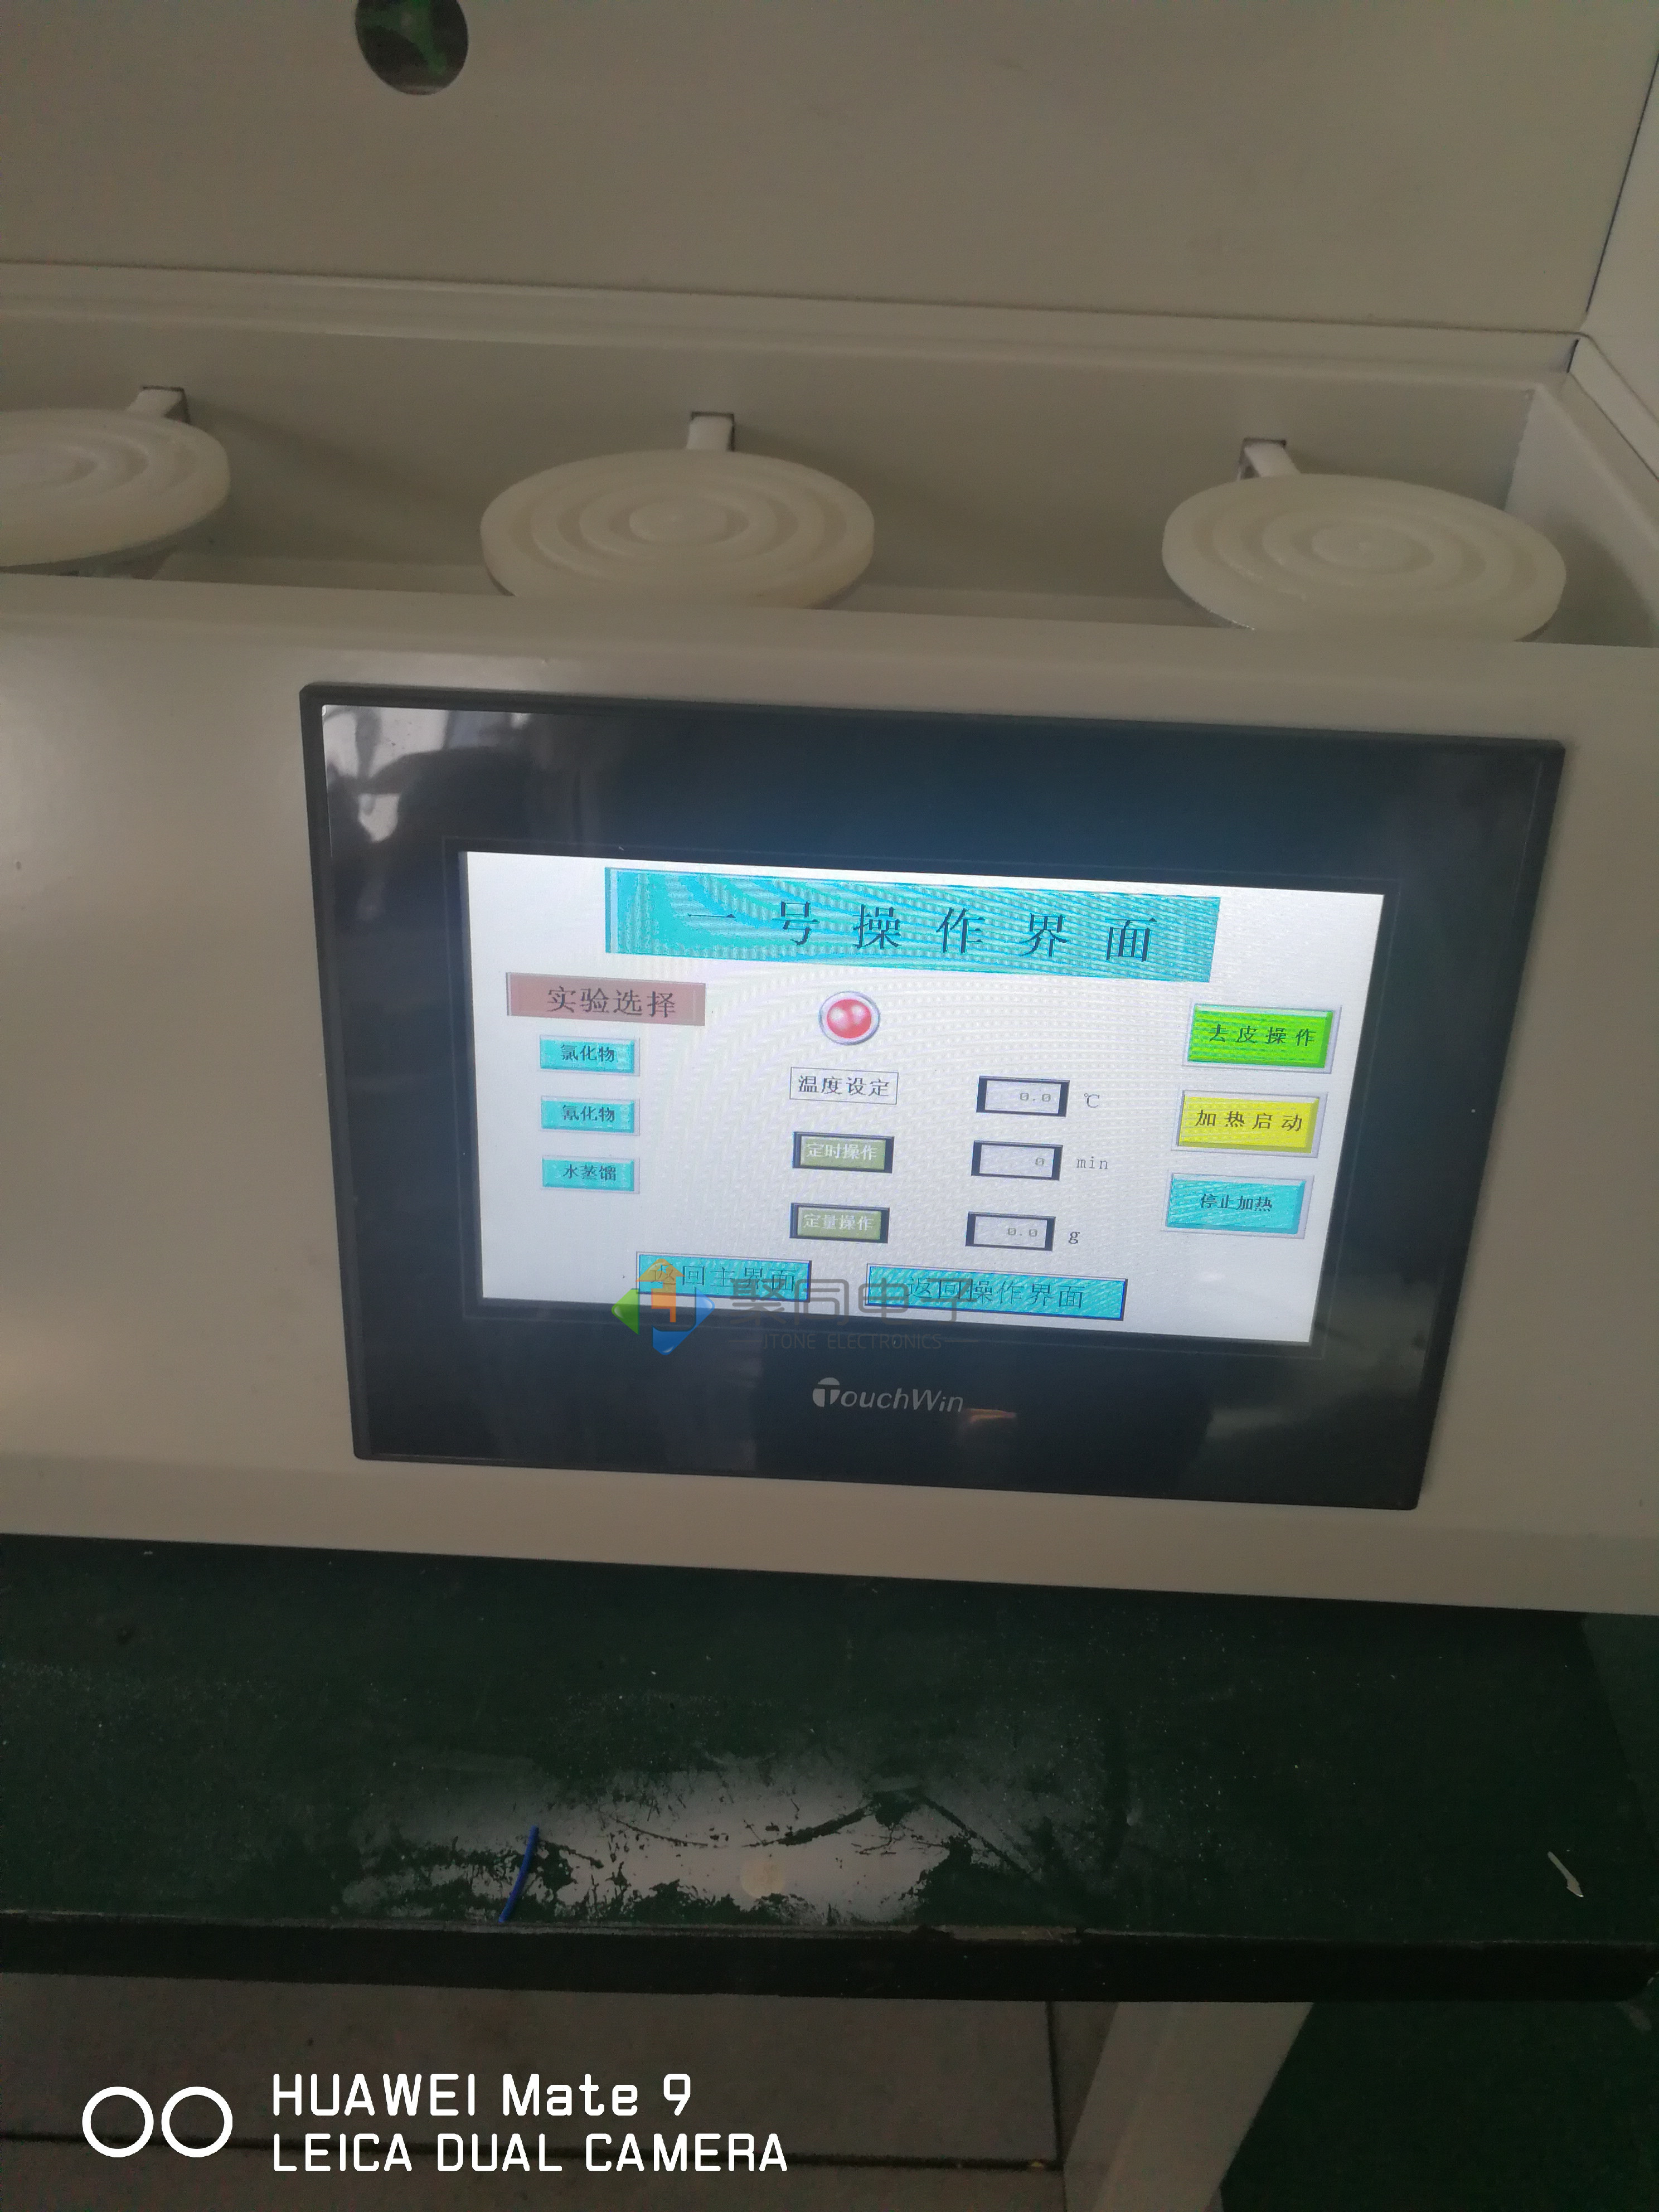 上海集菌仪锈钢机箱ZW-808A经久耐用